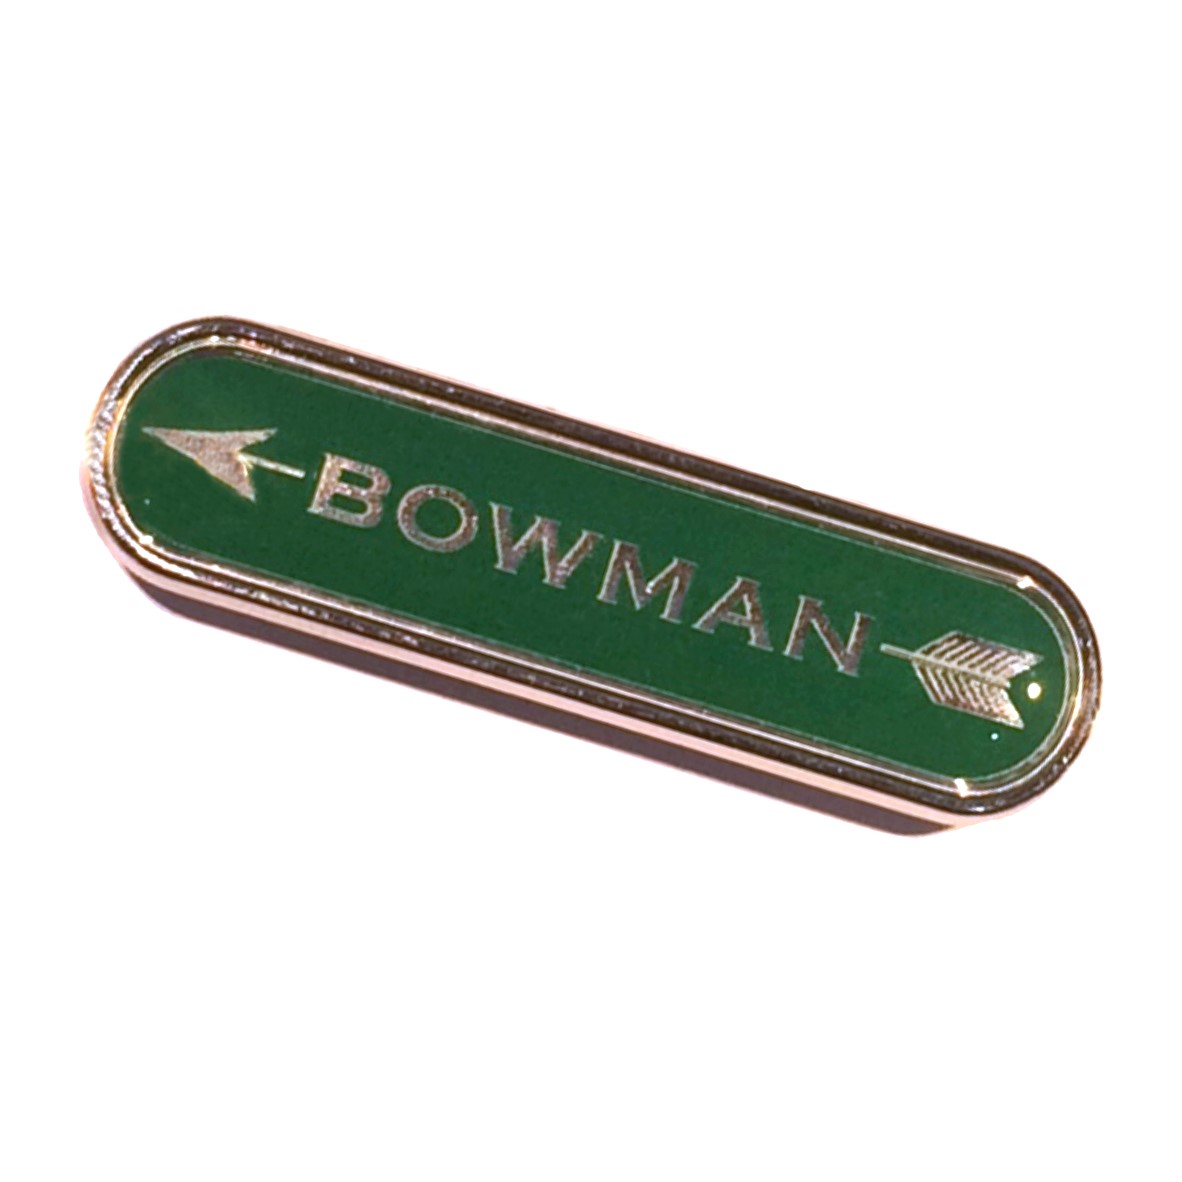 Class premium bar badge